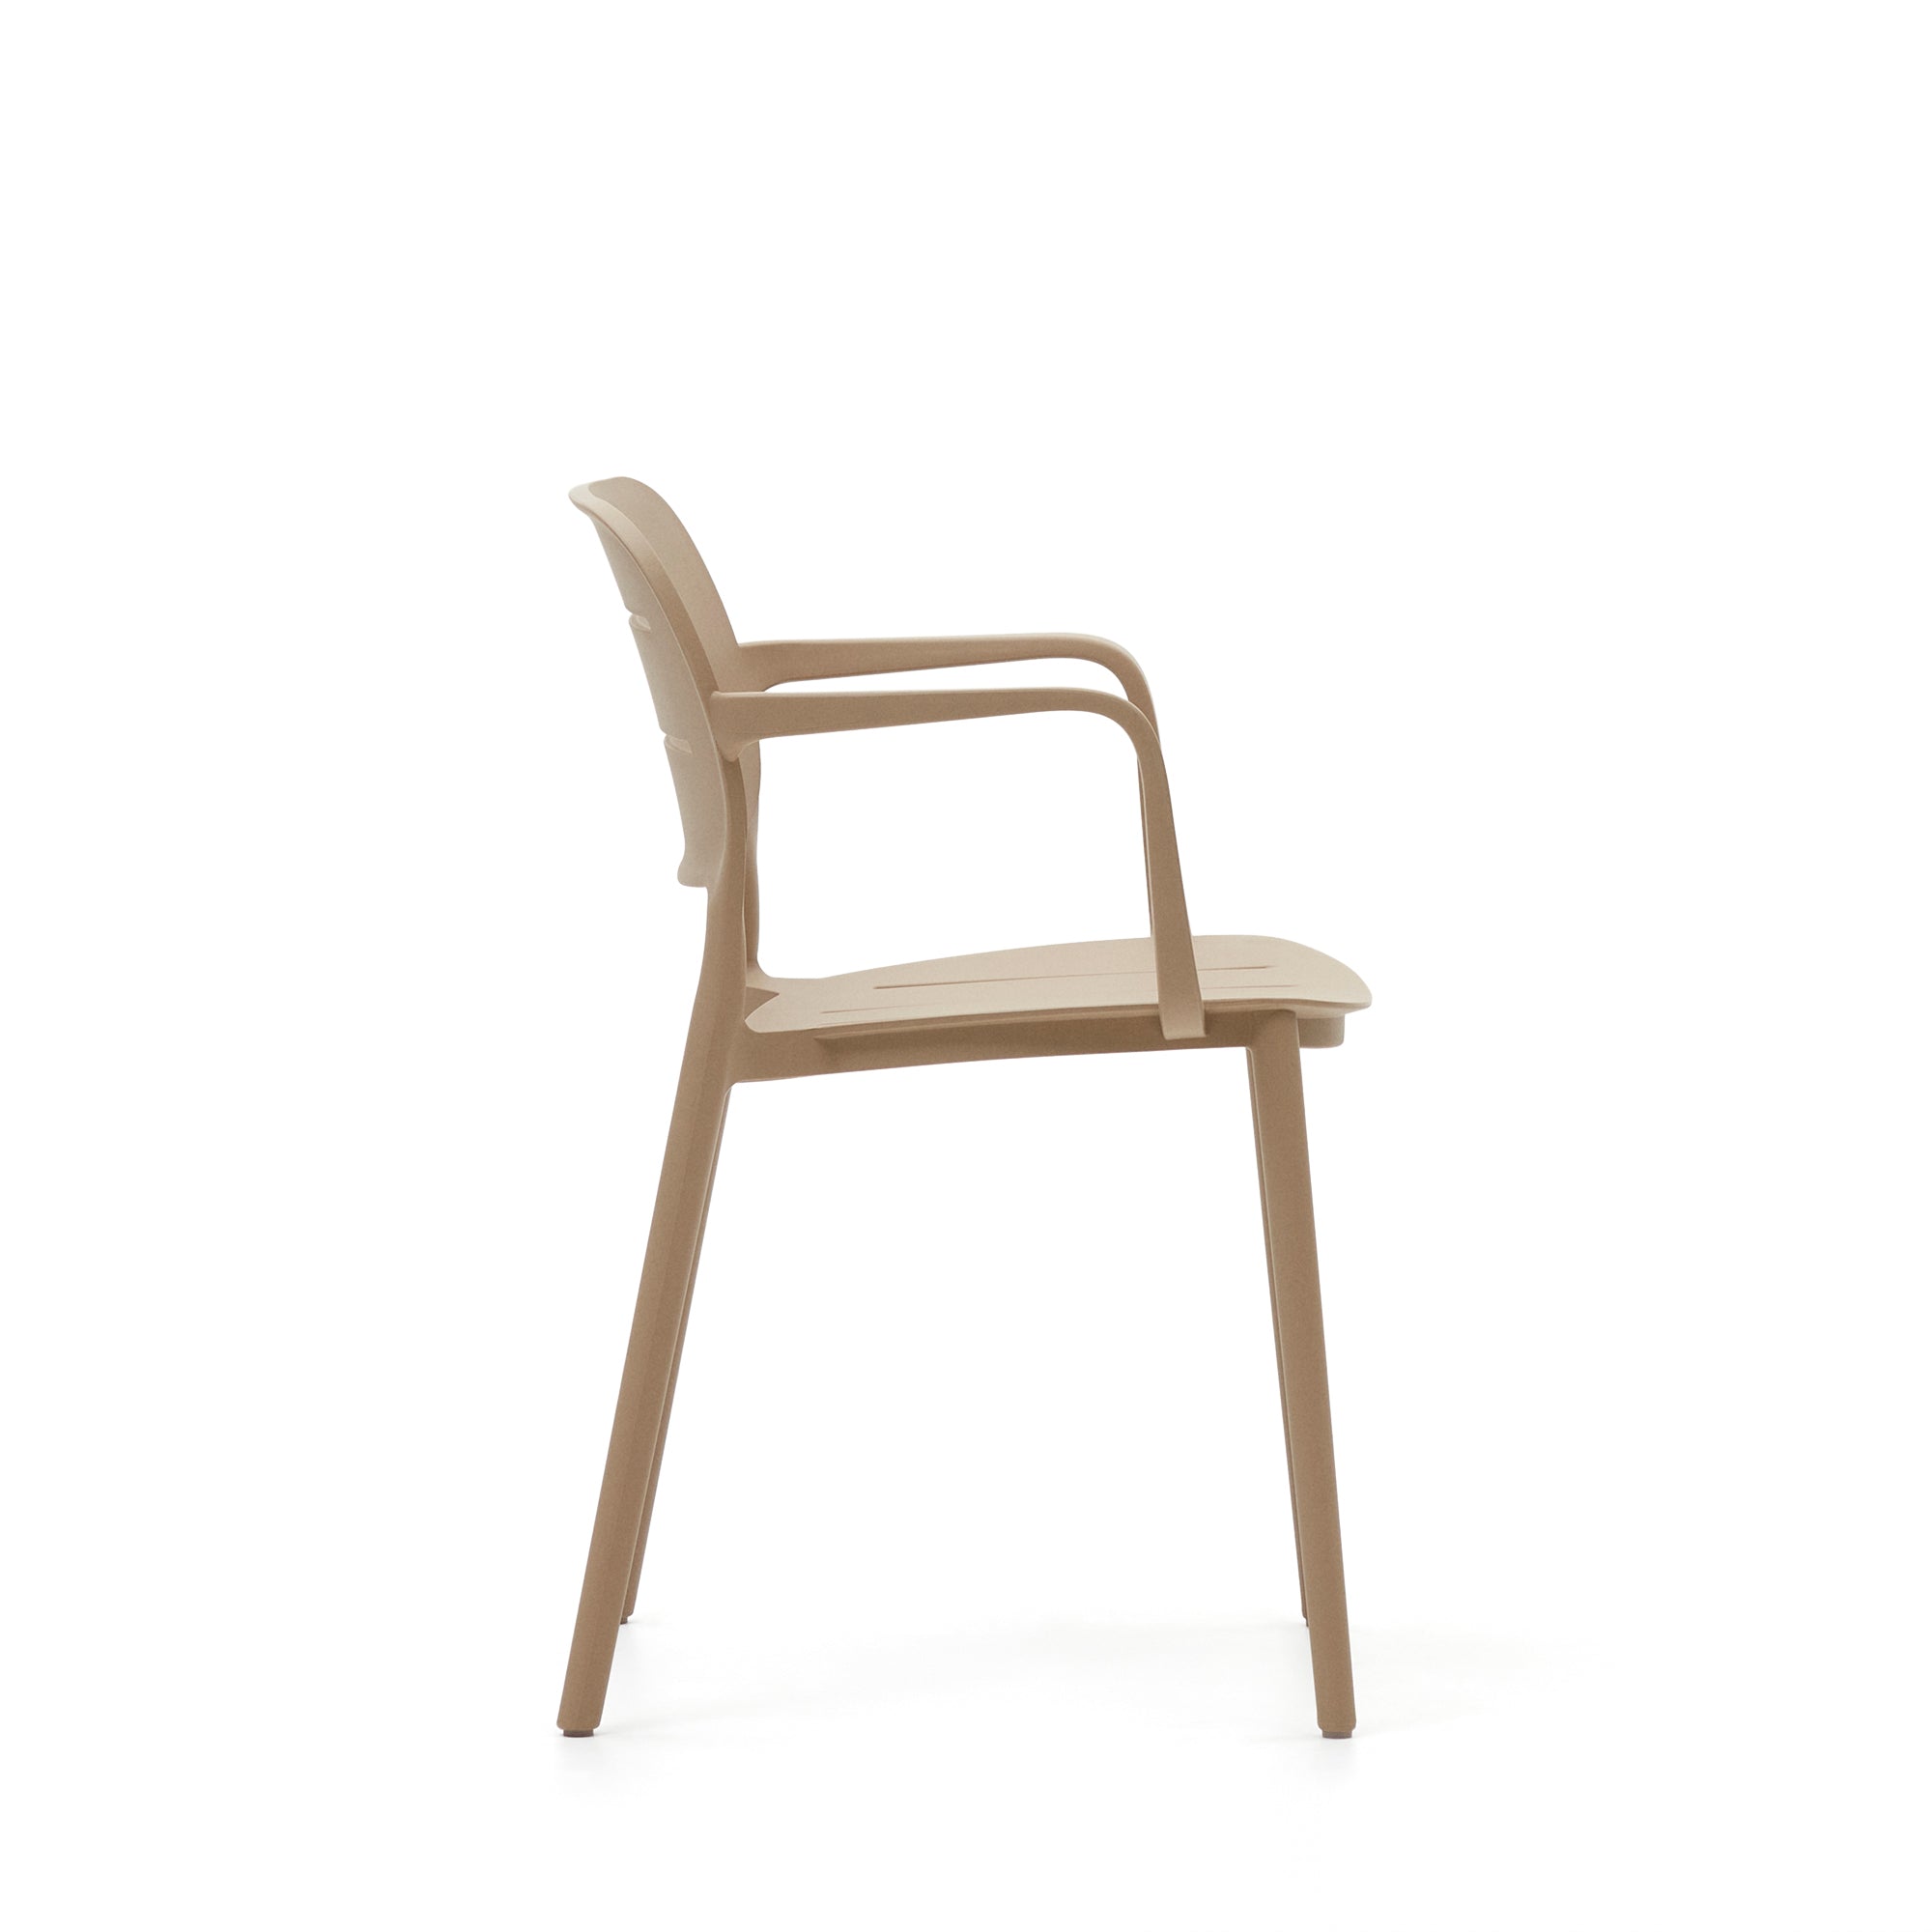 Morella stackable outdoor chair in beige